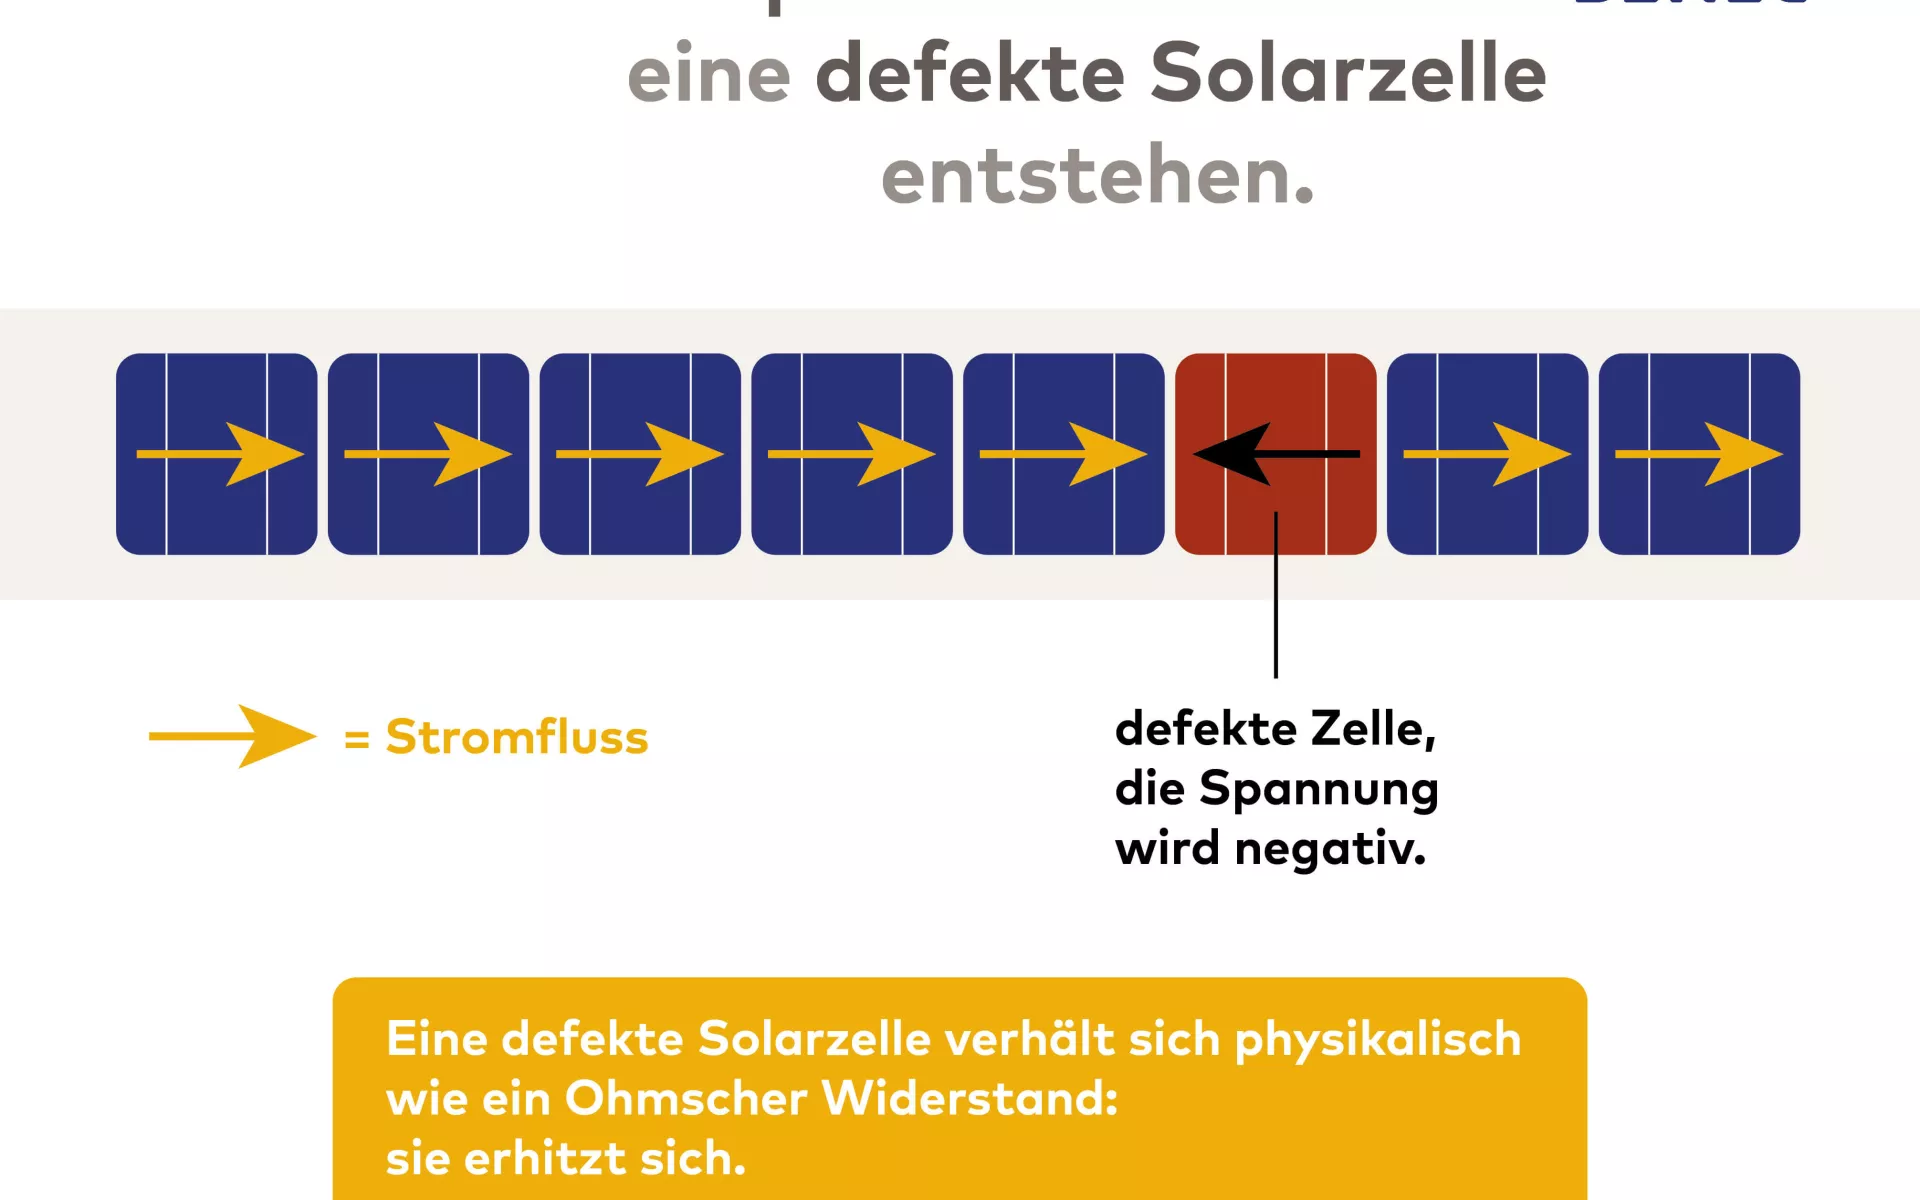 Die Grafik zeigt, wie der Hot-Spot-Effekt bei einer defekten Solarzelle entsteht. 